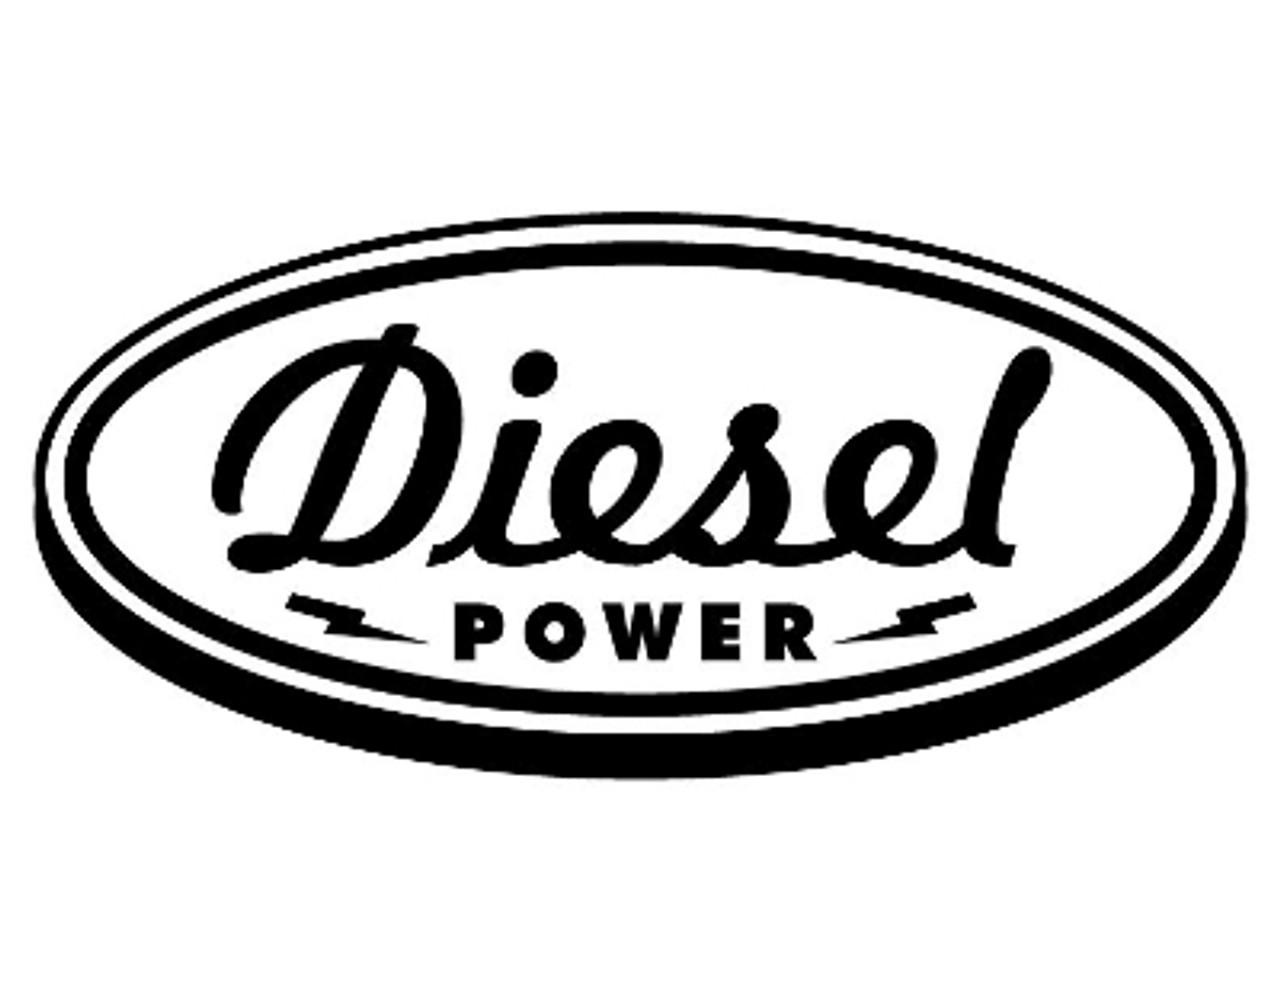 Diesel Power Decal